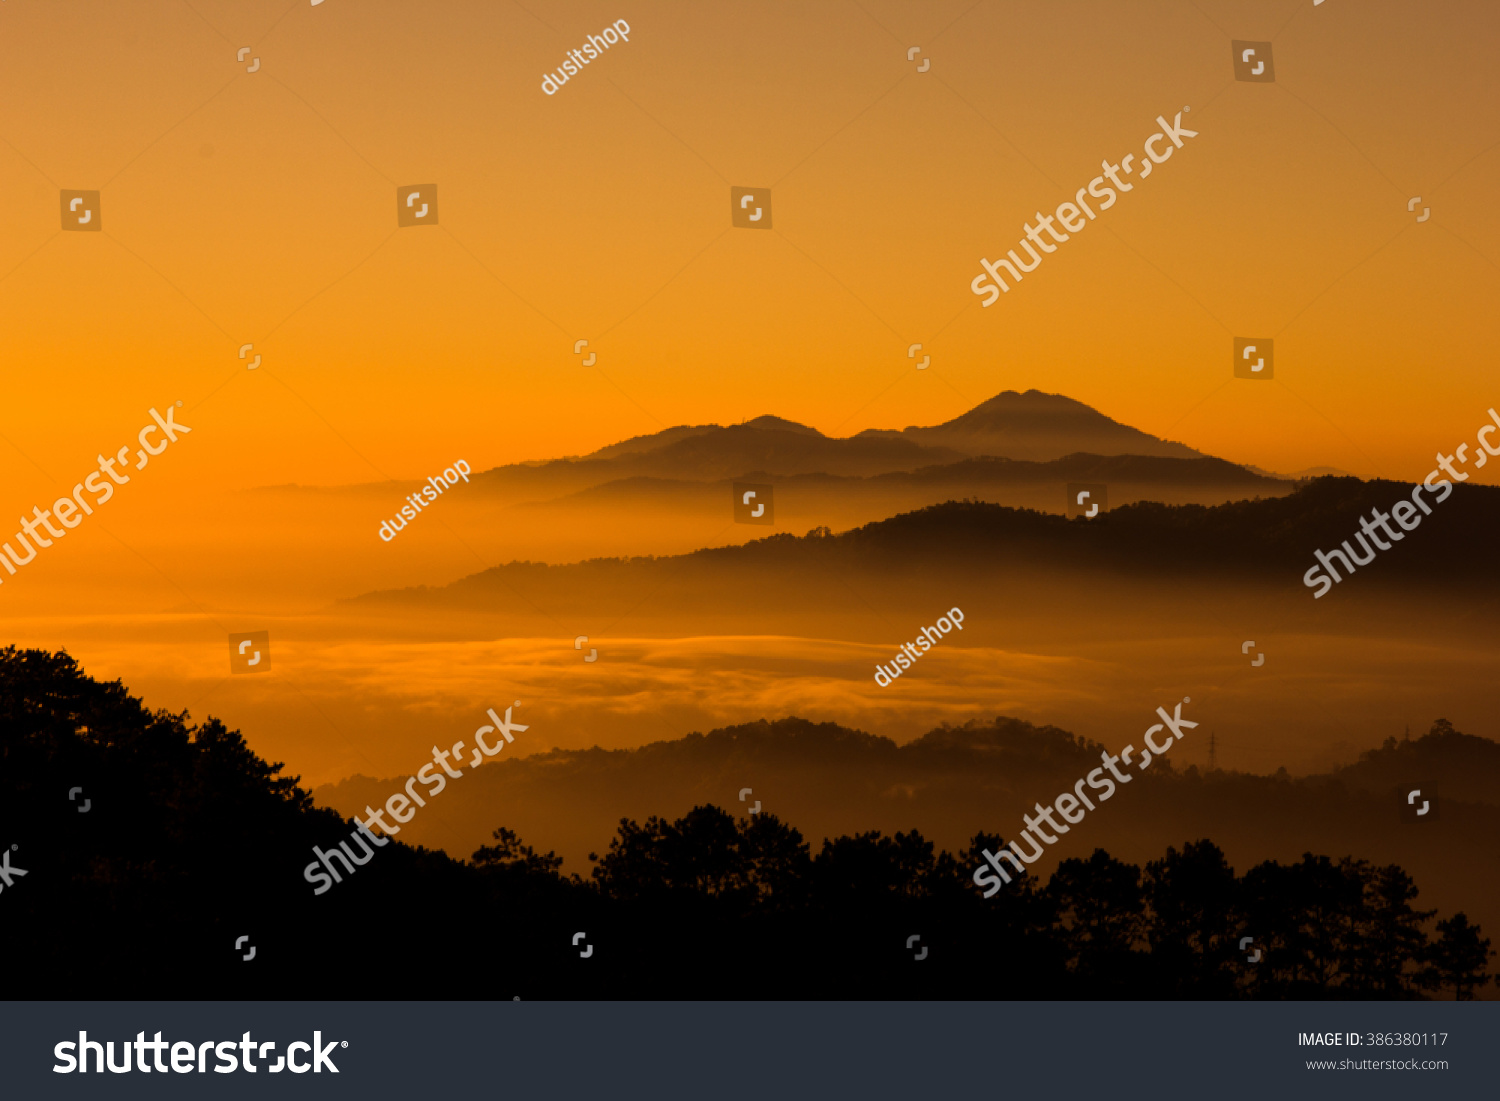 sunset on the mountain #386380117